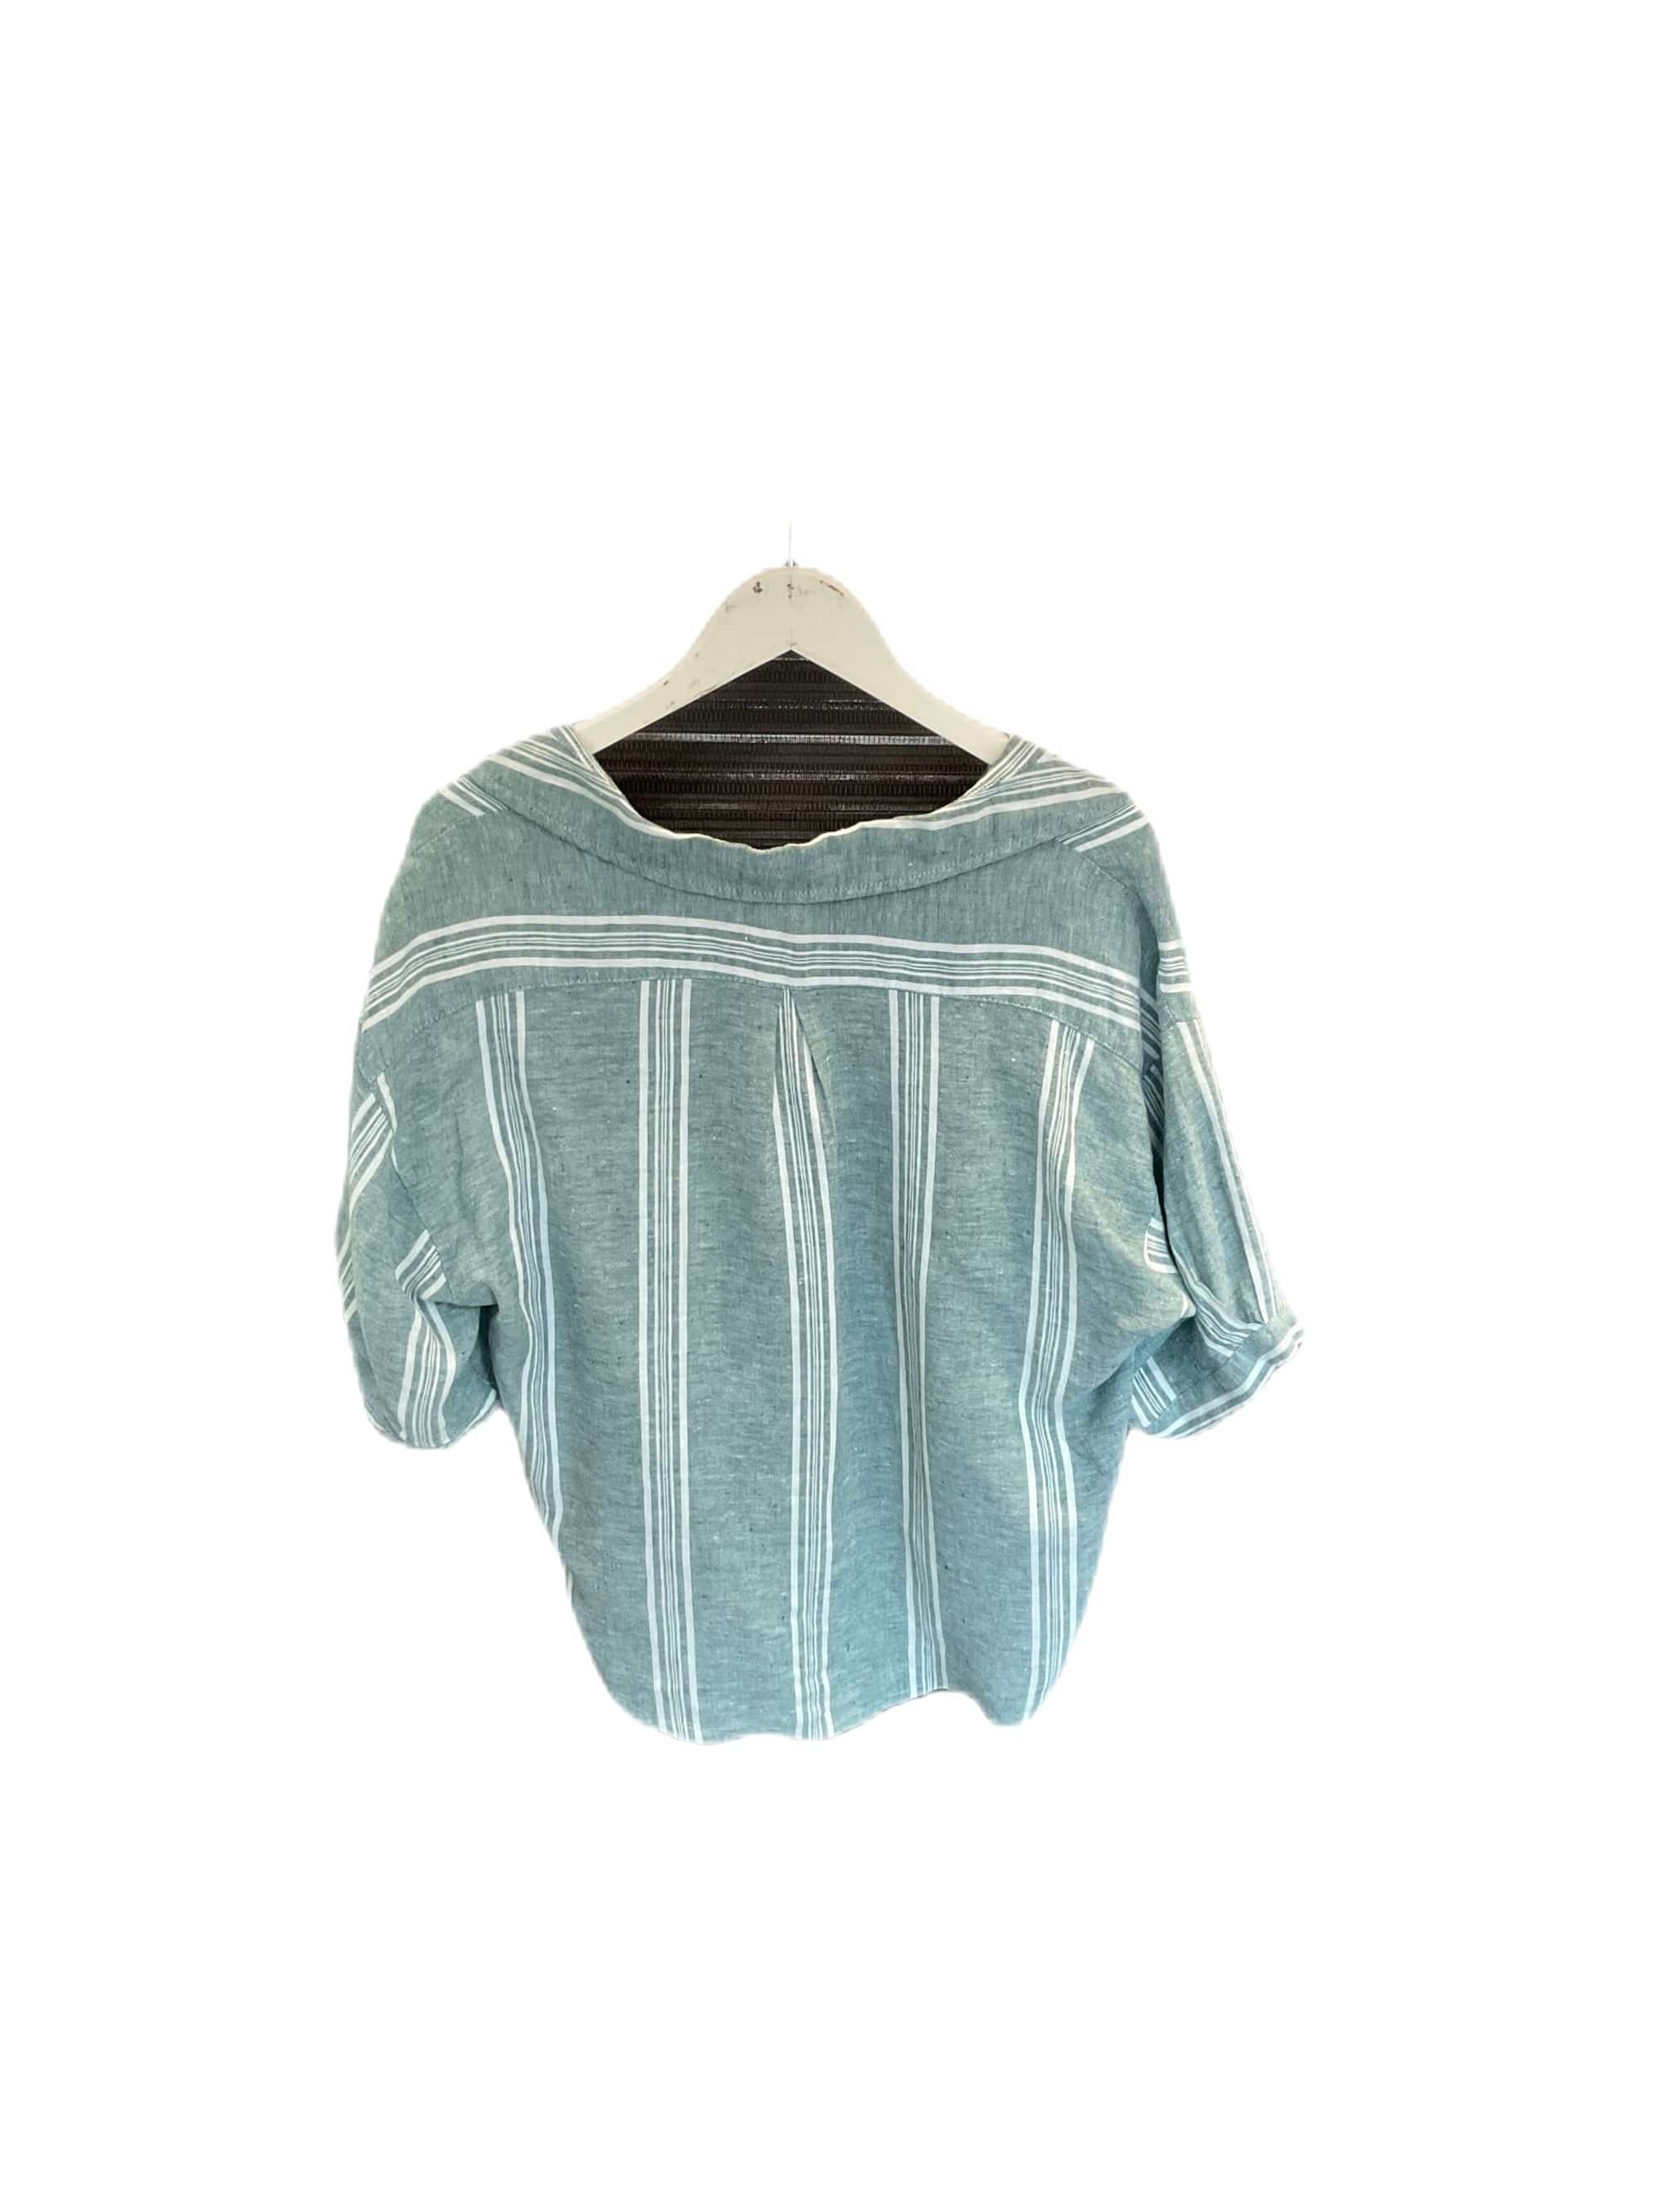 Inizio Linen Striped Shirt - clever alice